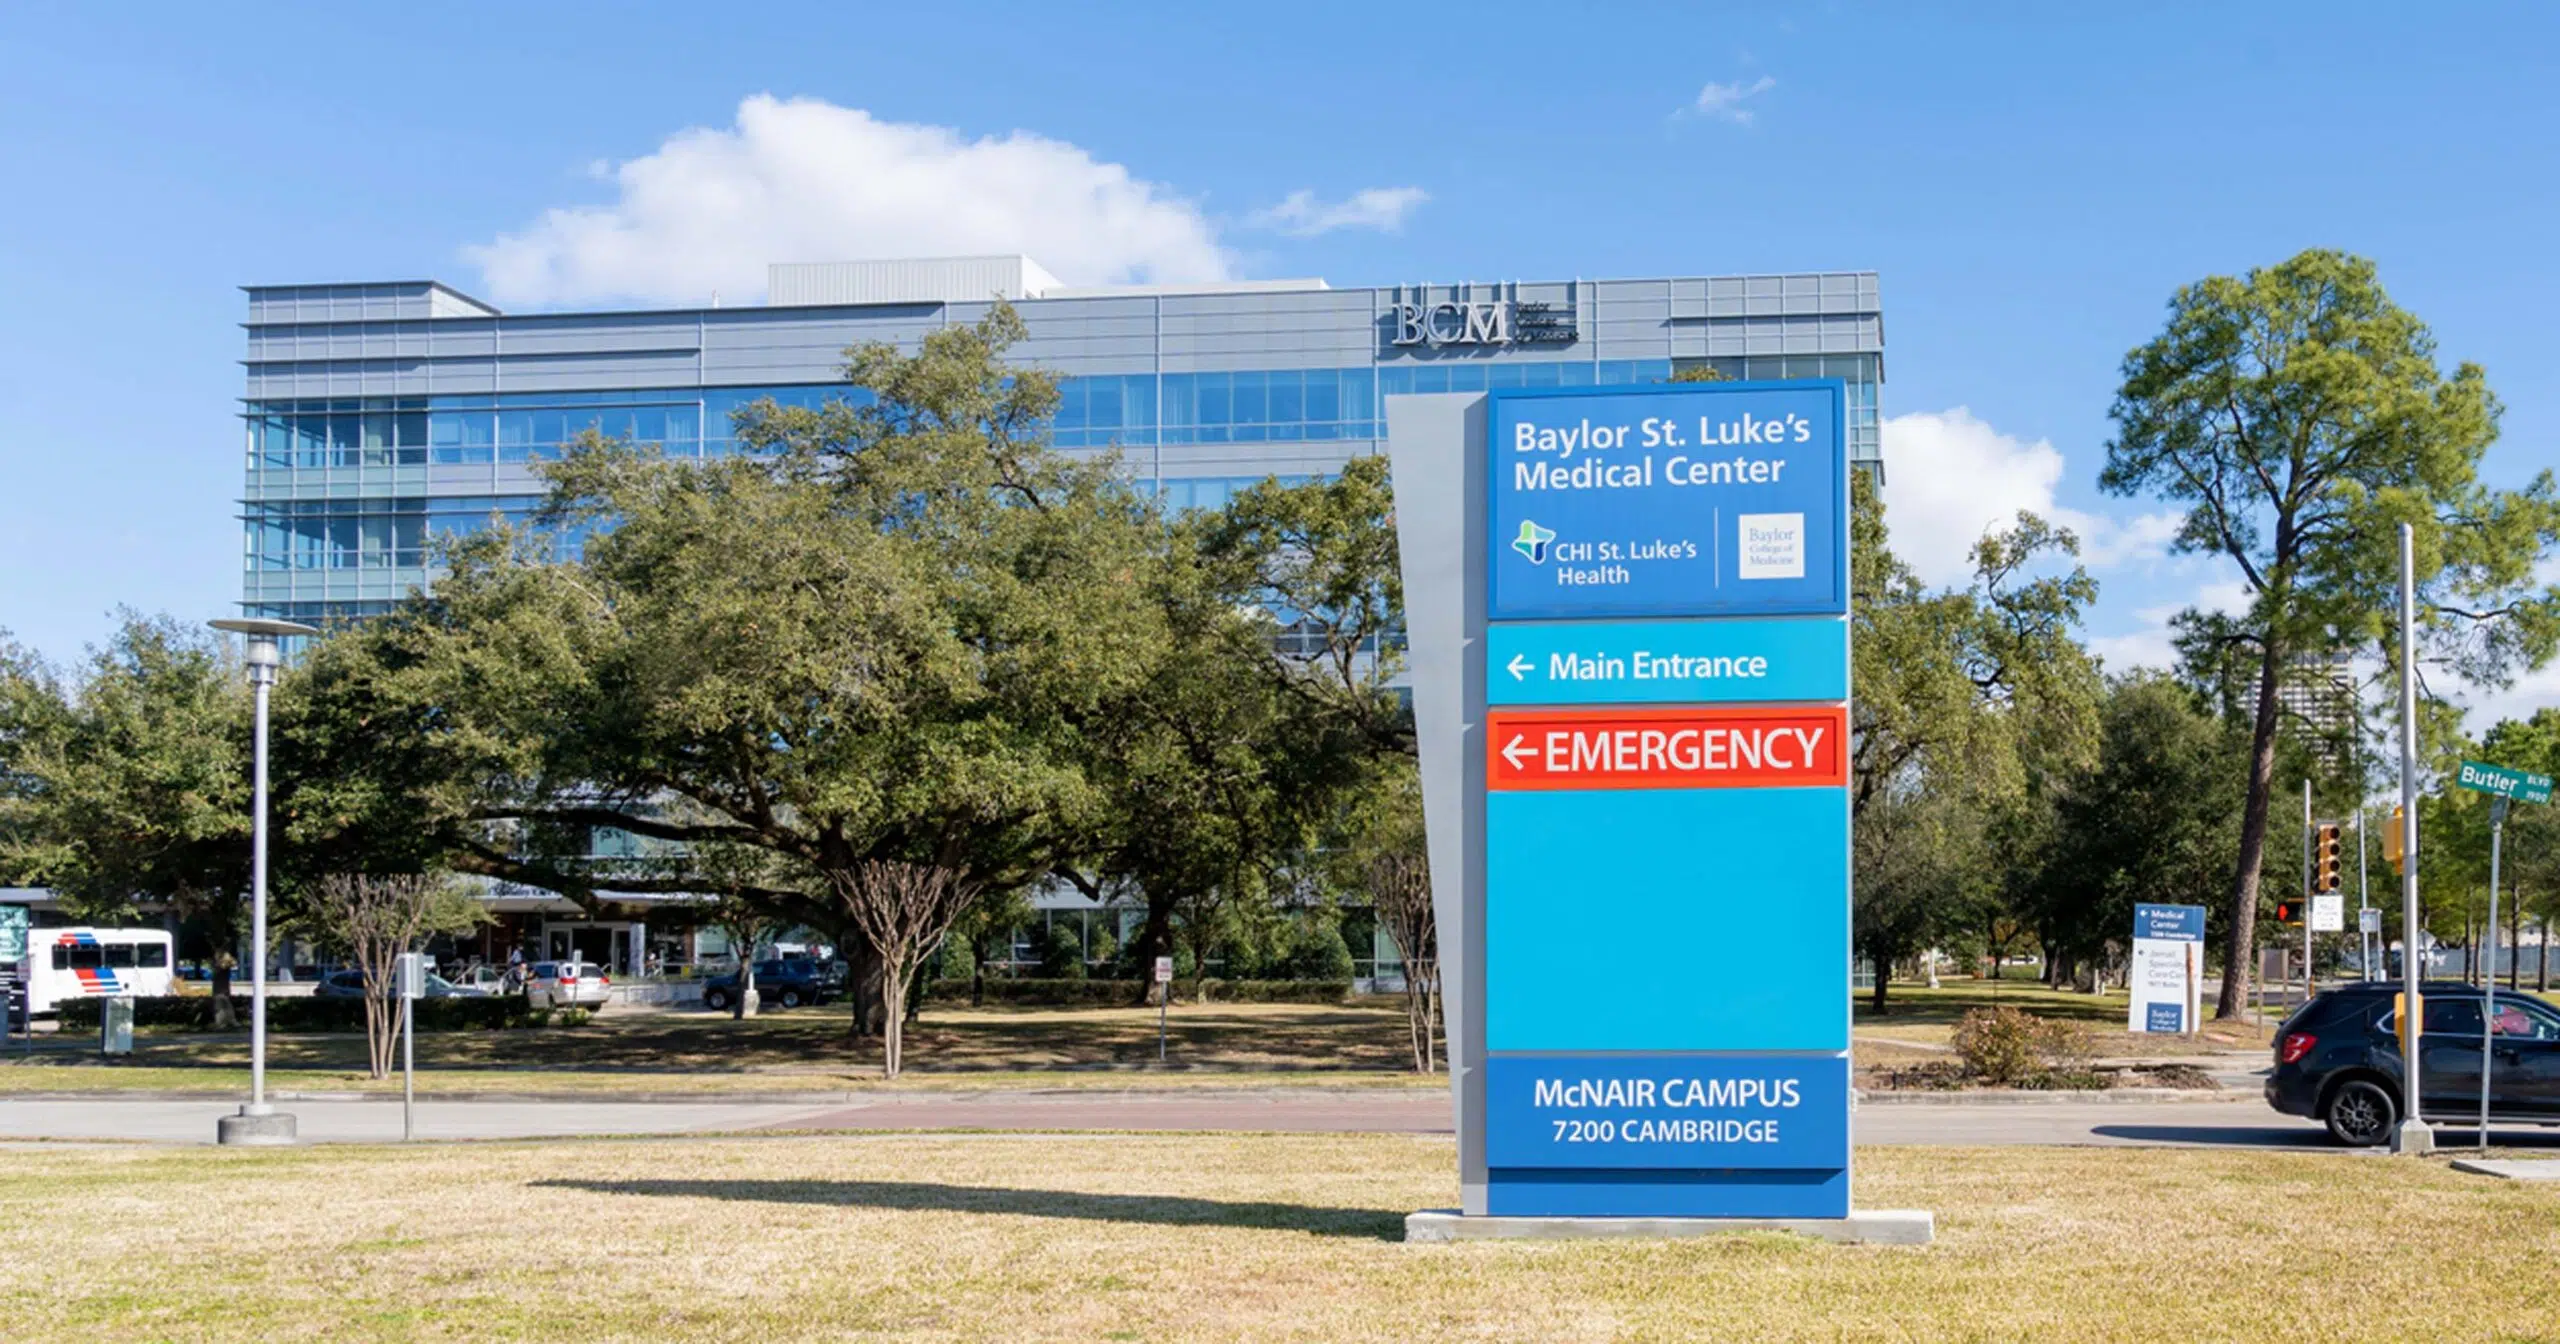 Baylor St. Luke's Medical Center in Houston, Texas